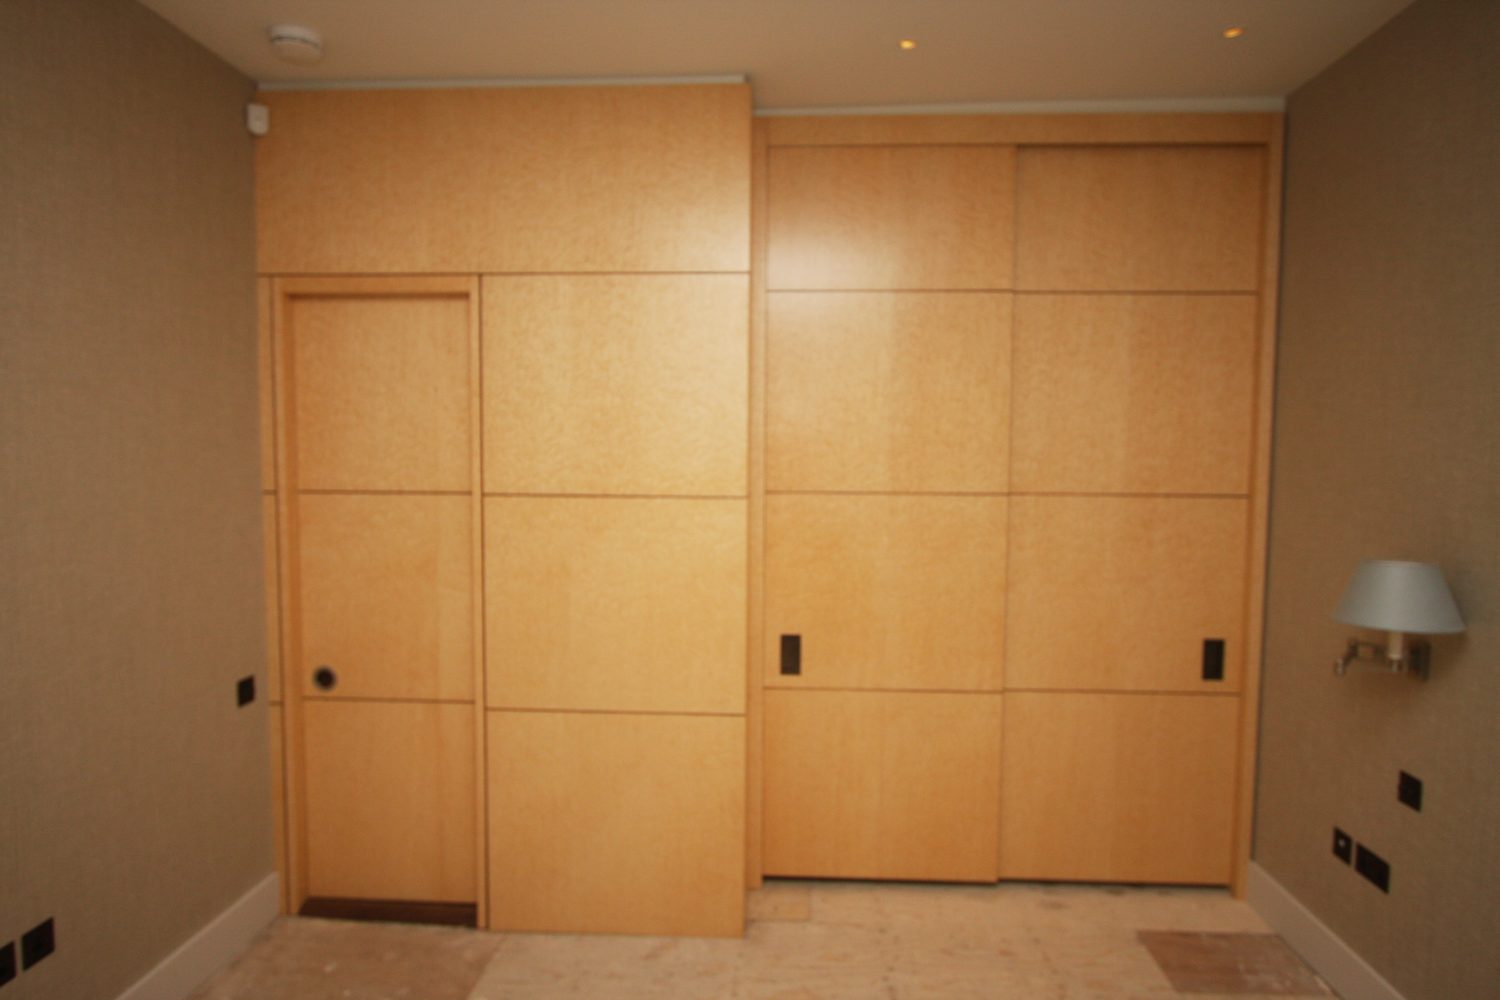 Pair of wardrobe doors and sliding en-suite door